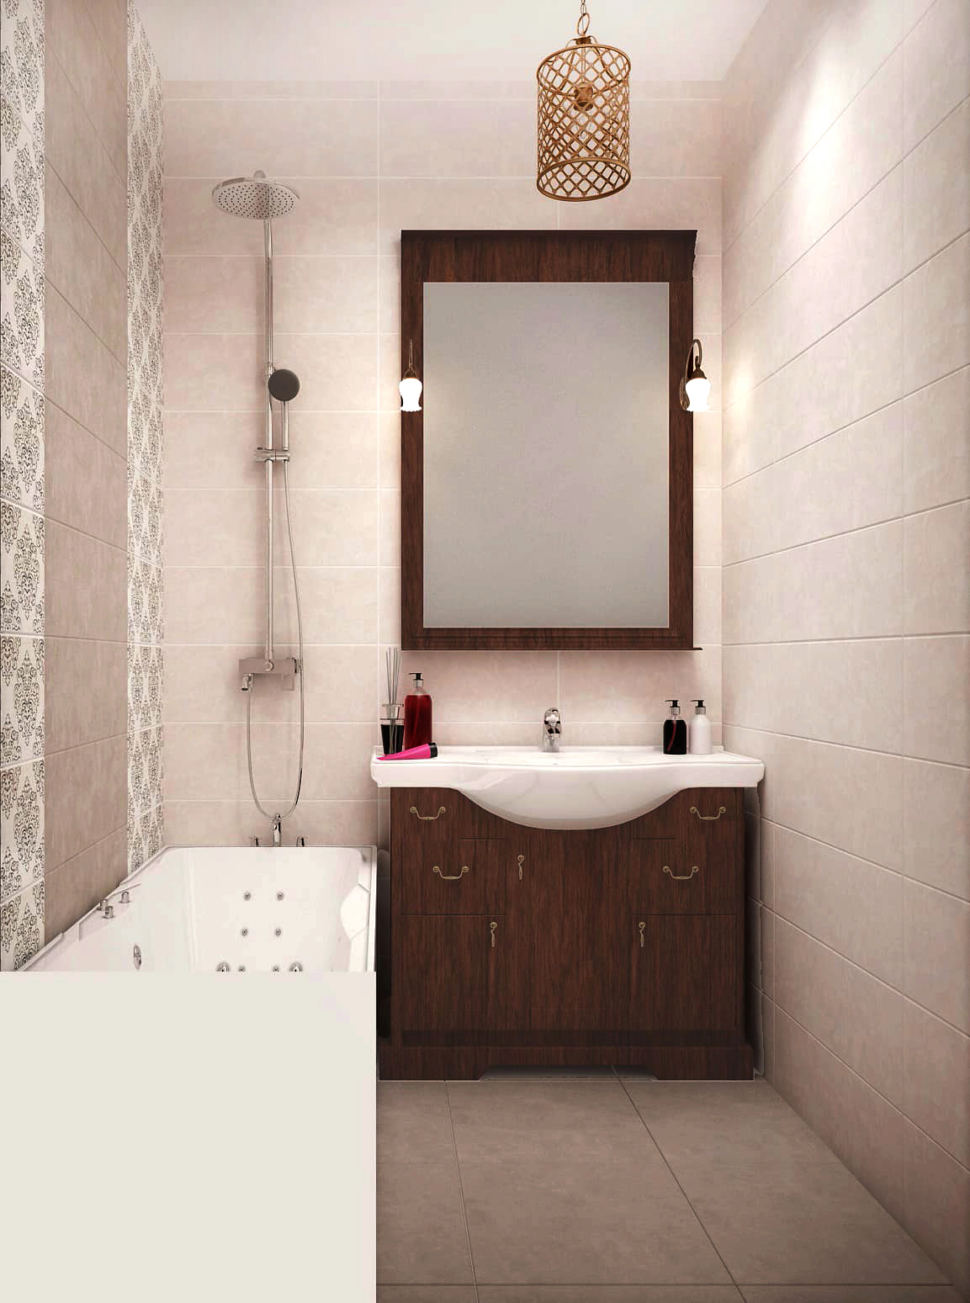 Дизайн ванной комнаты 3 кв.м в теплых тонах, ванна, зеркало в темной раме, тумба, люстра, декор